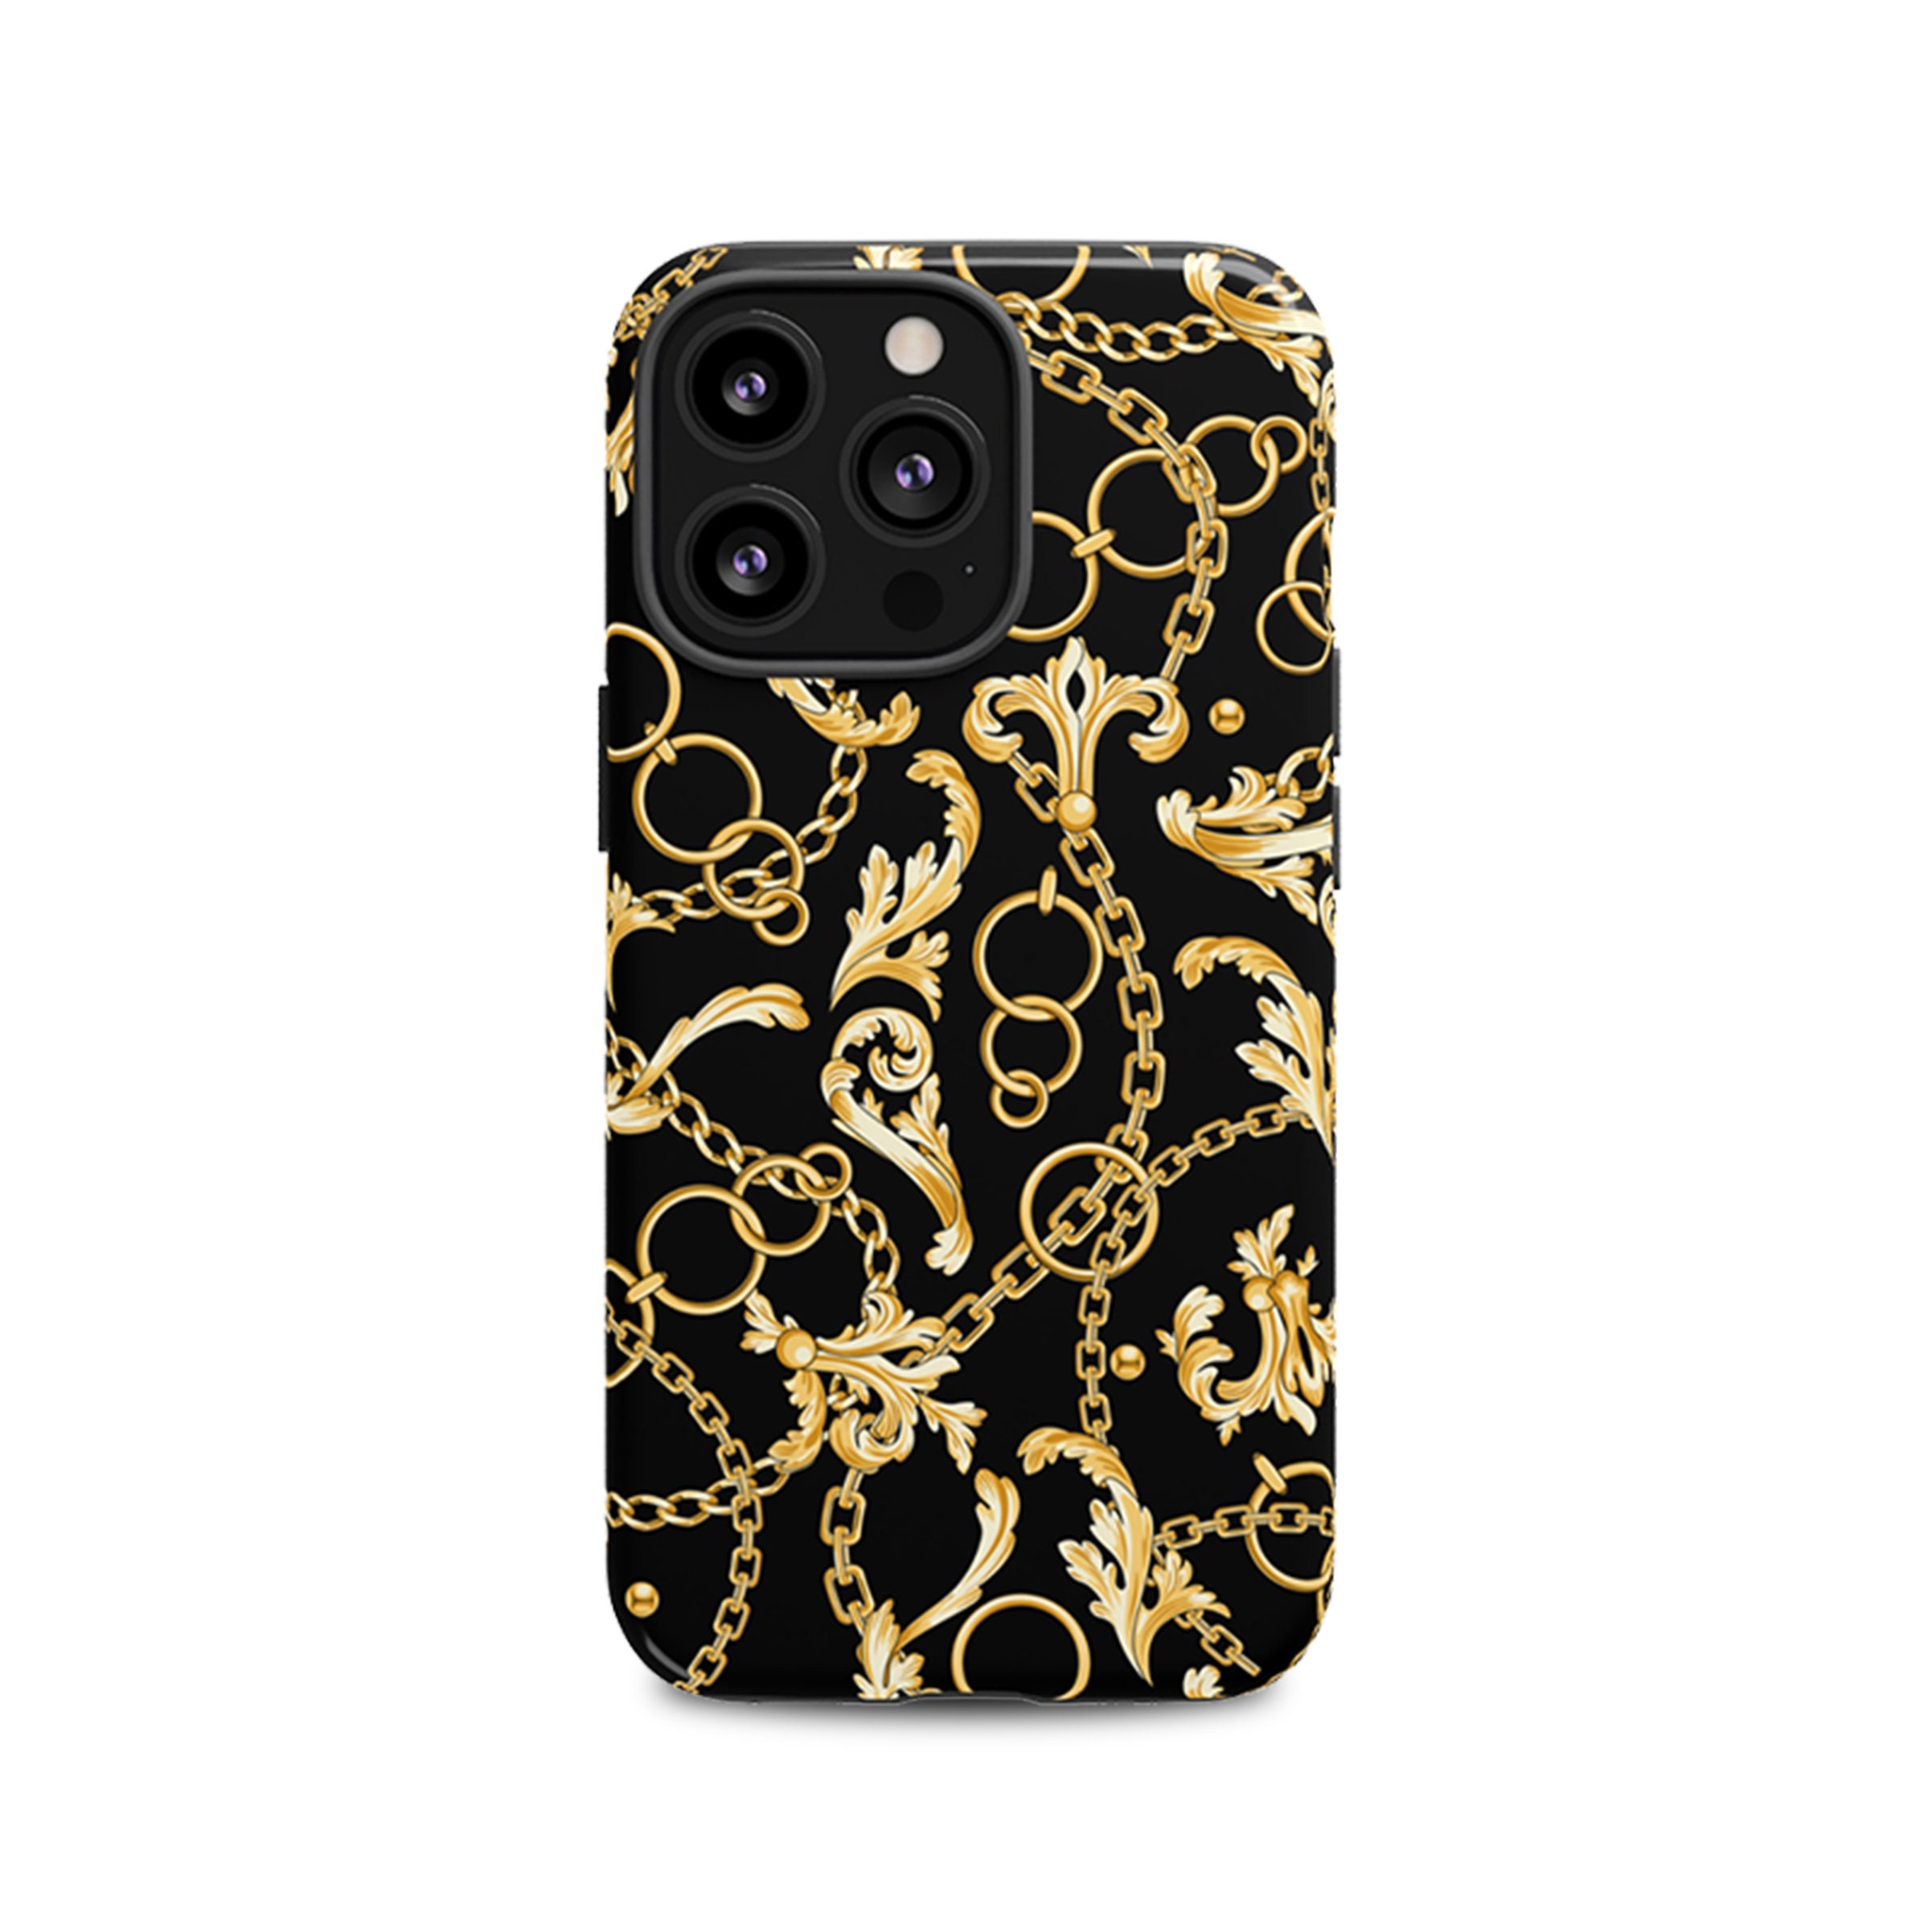 Chanel Iphone 6 Case / Pure Dva